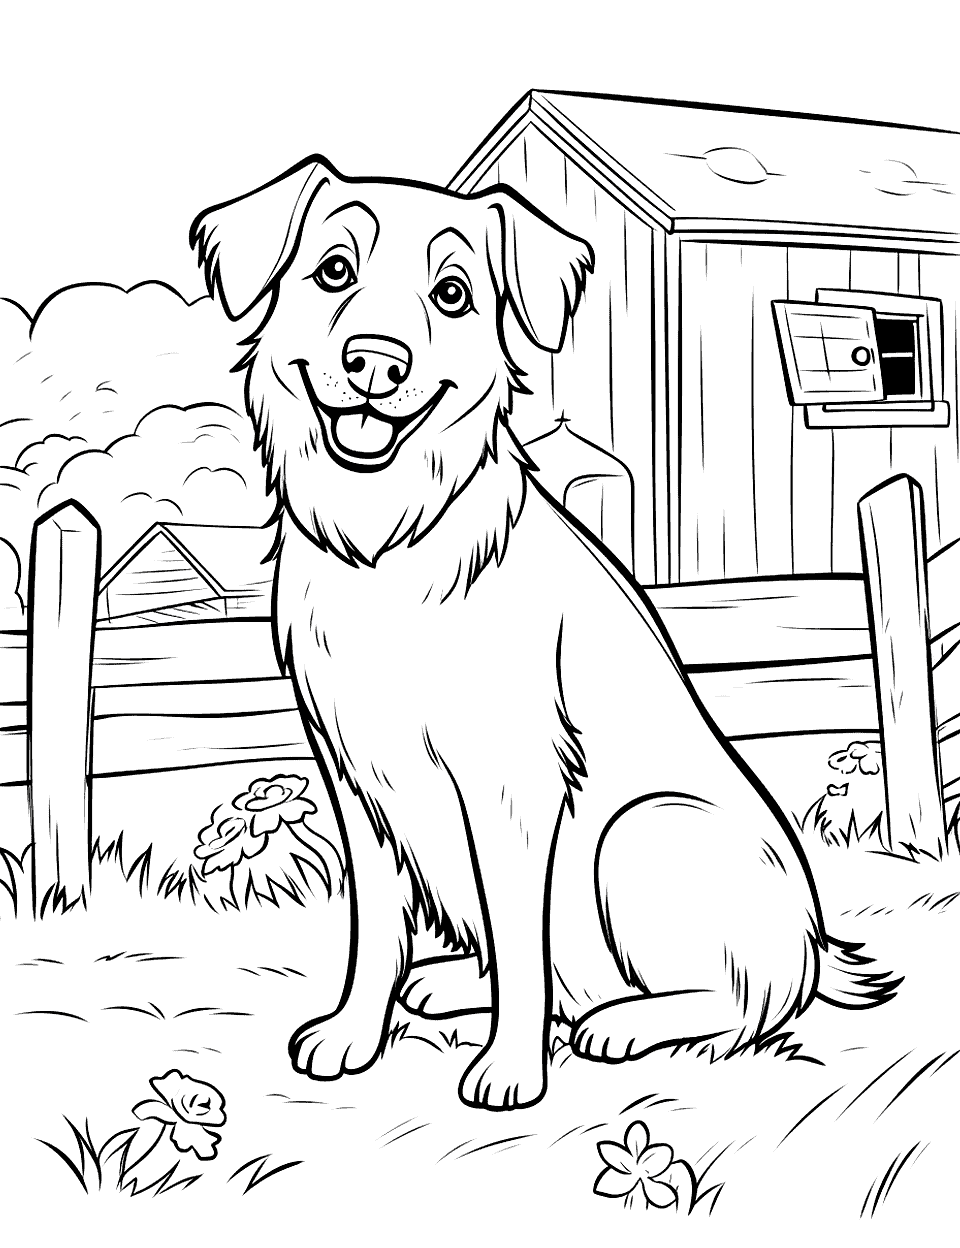 Friendly Farm Dog Coloring Page - A friendly dog sitting near the farmhouse.